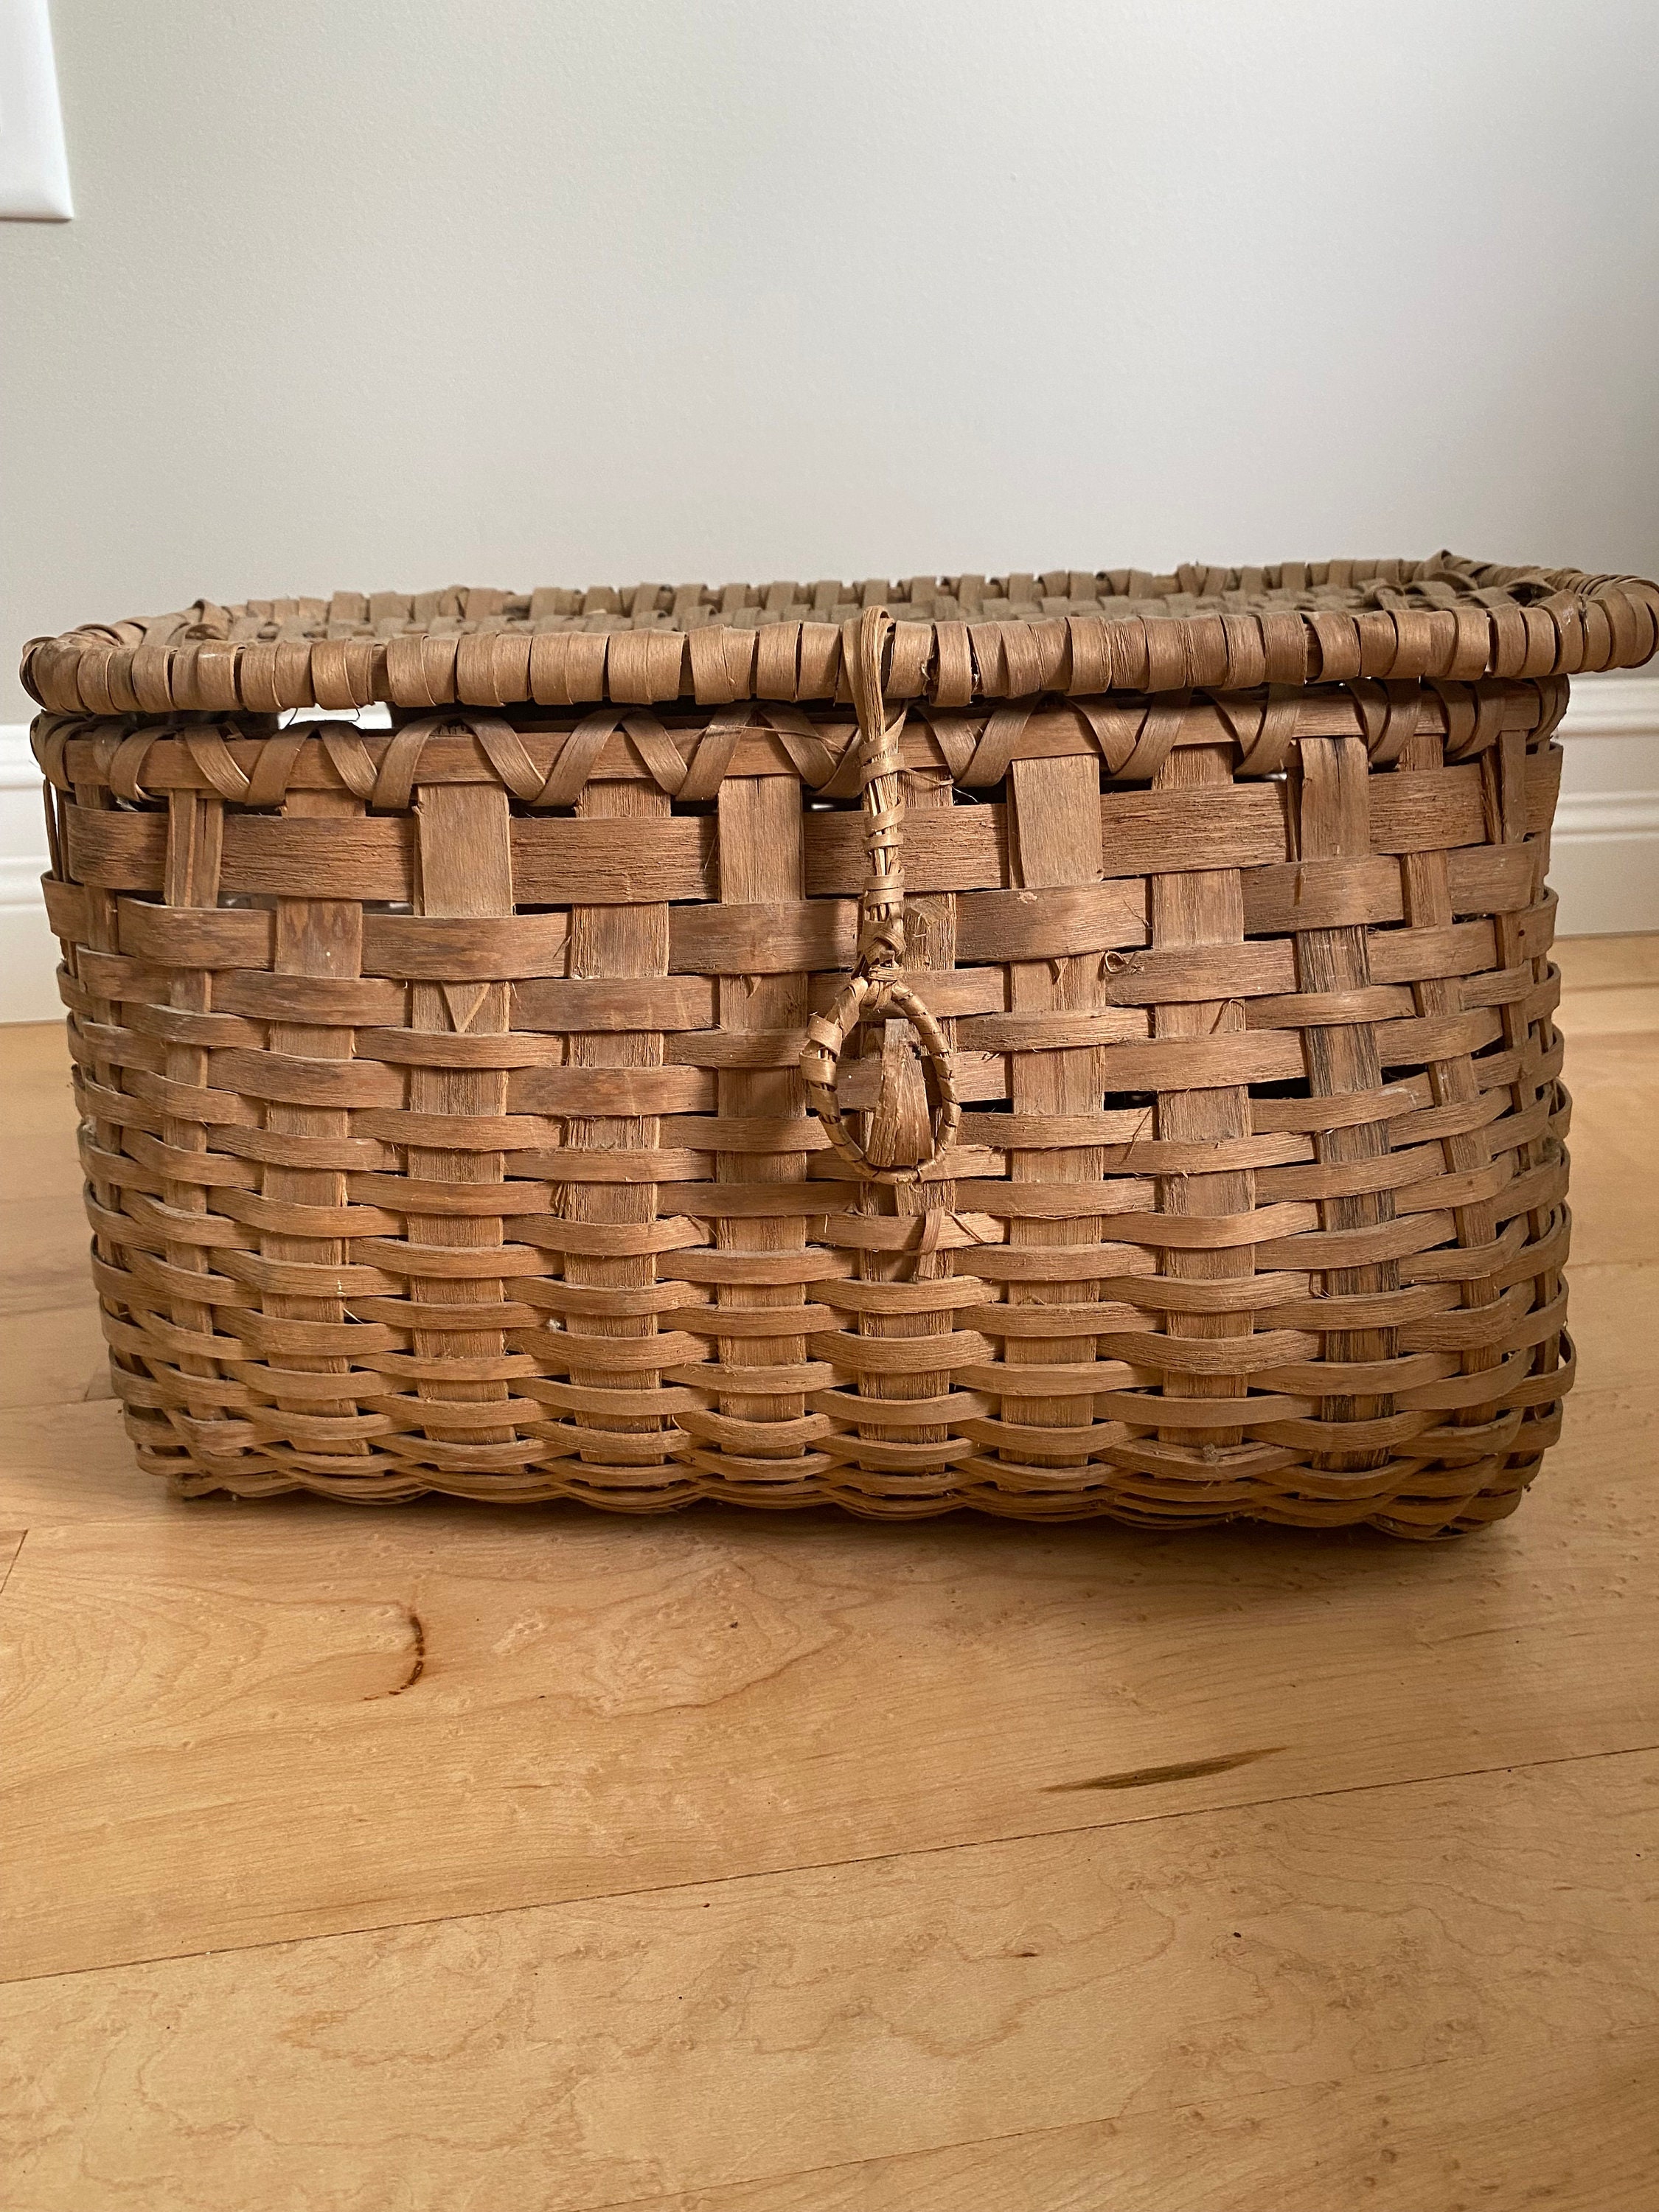 Vintage Fishing Creel Basket, Wicker Fishing Basket